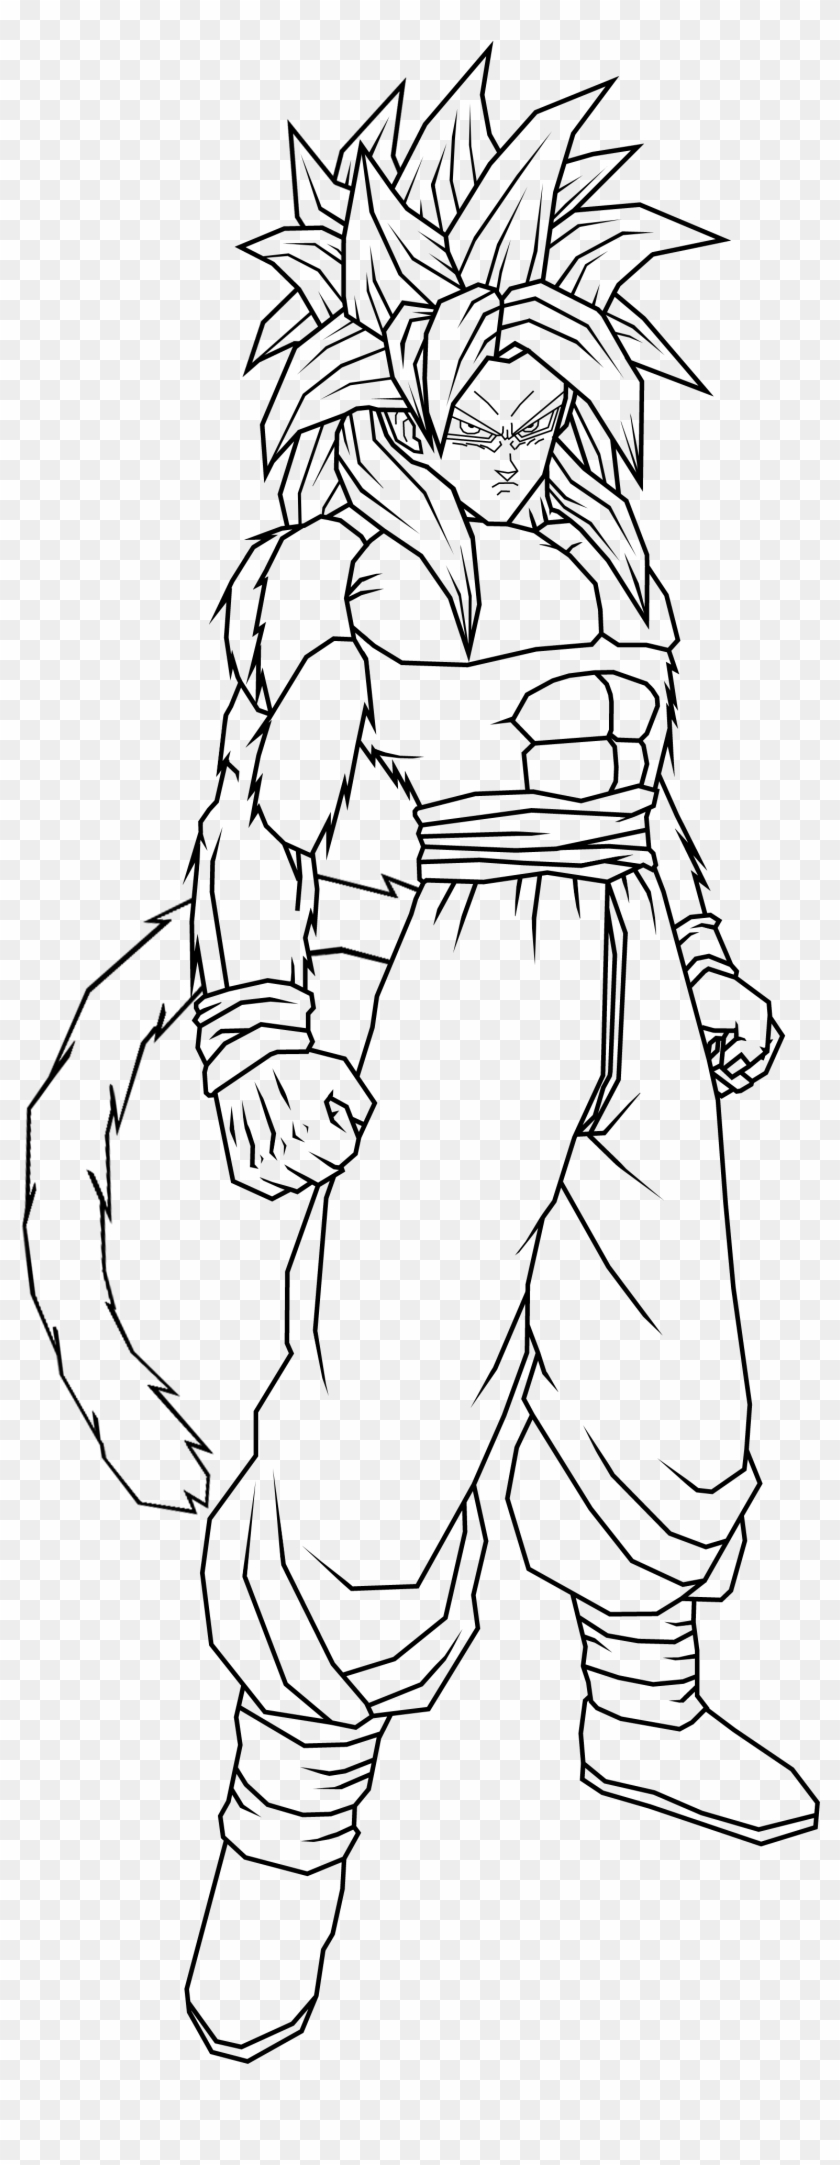 Goku Super Saiyan 4 Coloring Pictures - Goku Fase 4 Para Dibujar Clipart #3282615